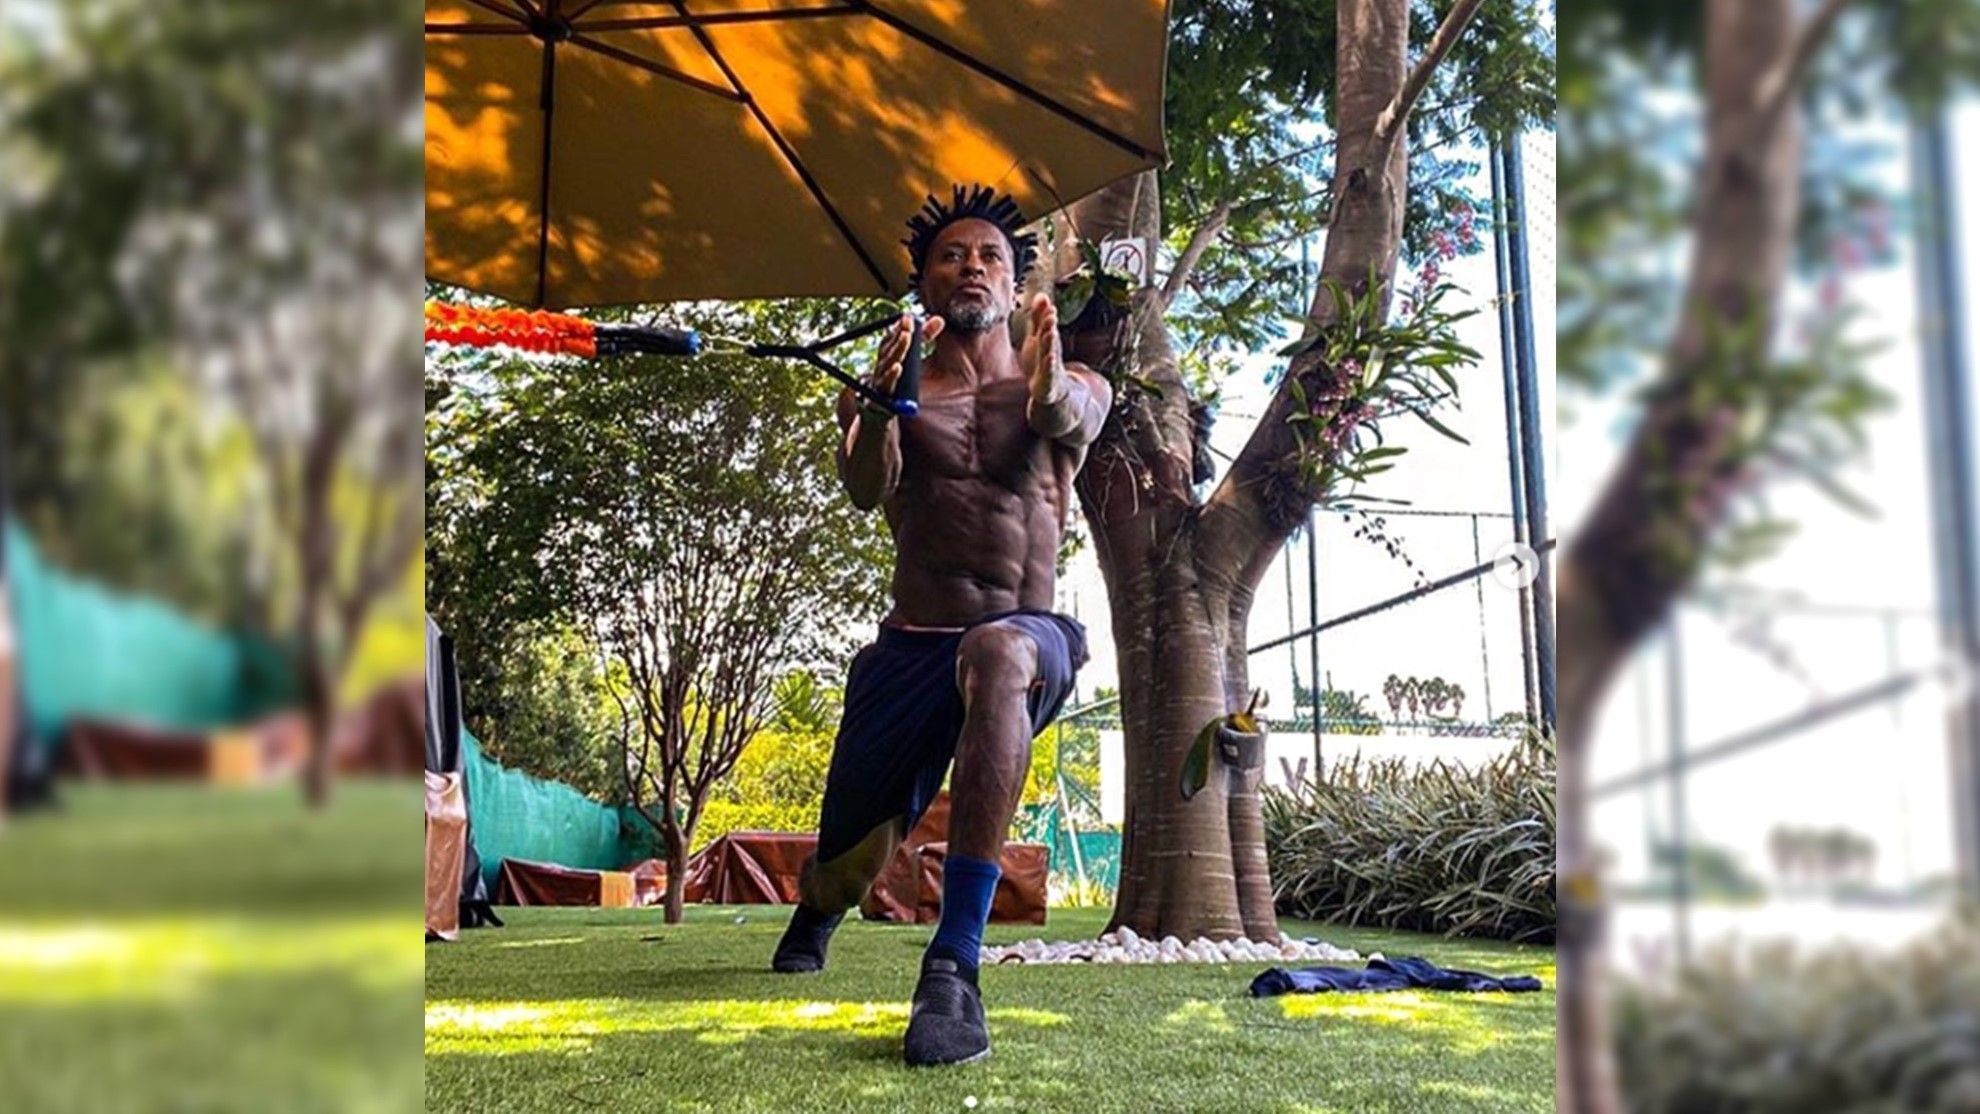 
                <strong>Ze Roberto </strong><br>
                Damit er seinen Traumkörper so halten kann, arbeitet Ze Roberto mit gezielten Übungen fleißig an seiner Fitness. Eines seiner Geheimrezepte: Körper-Balance: "Immer das Gleichgewicht halten", schreibt er zu diesem Foto auf seinem Instagram-Account.
              